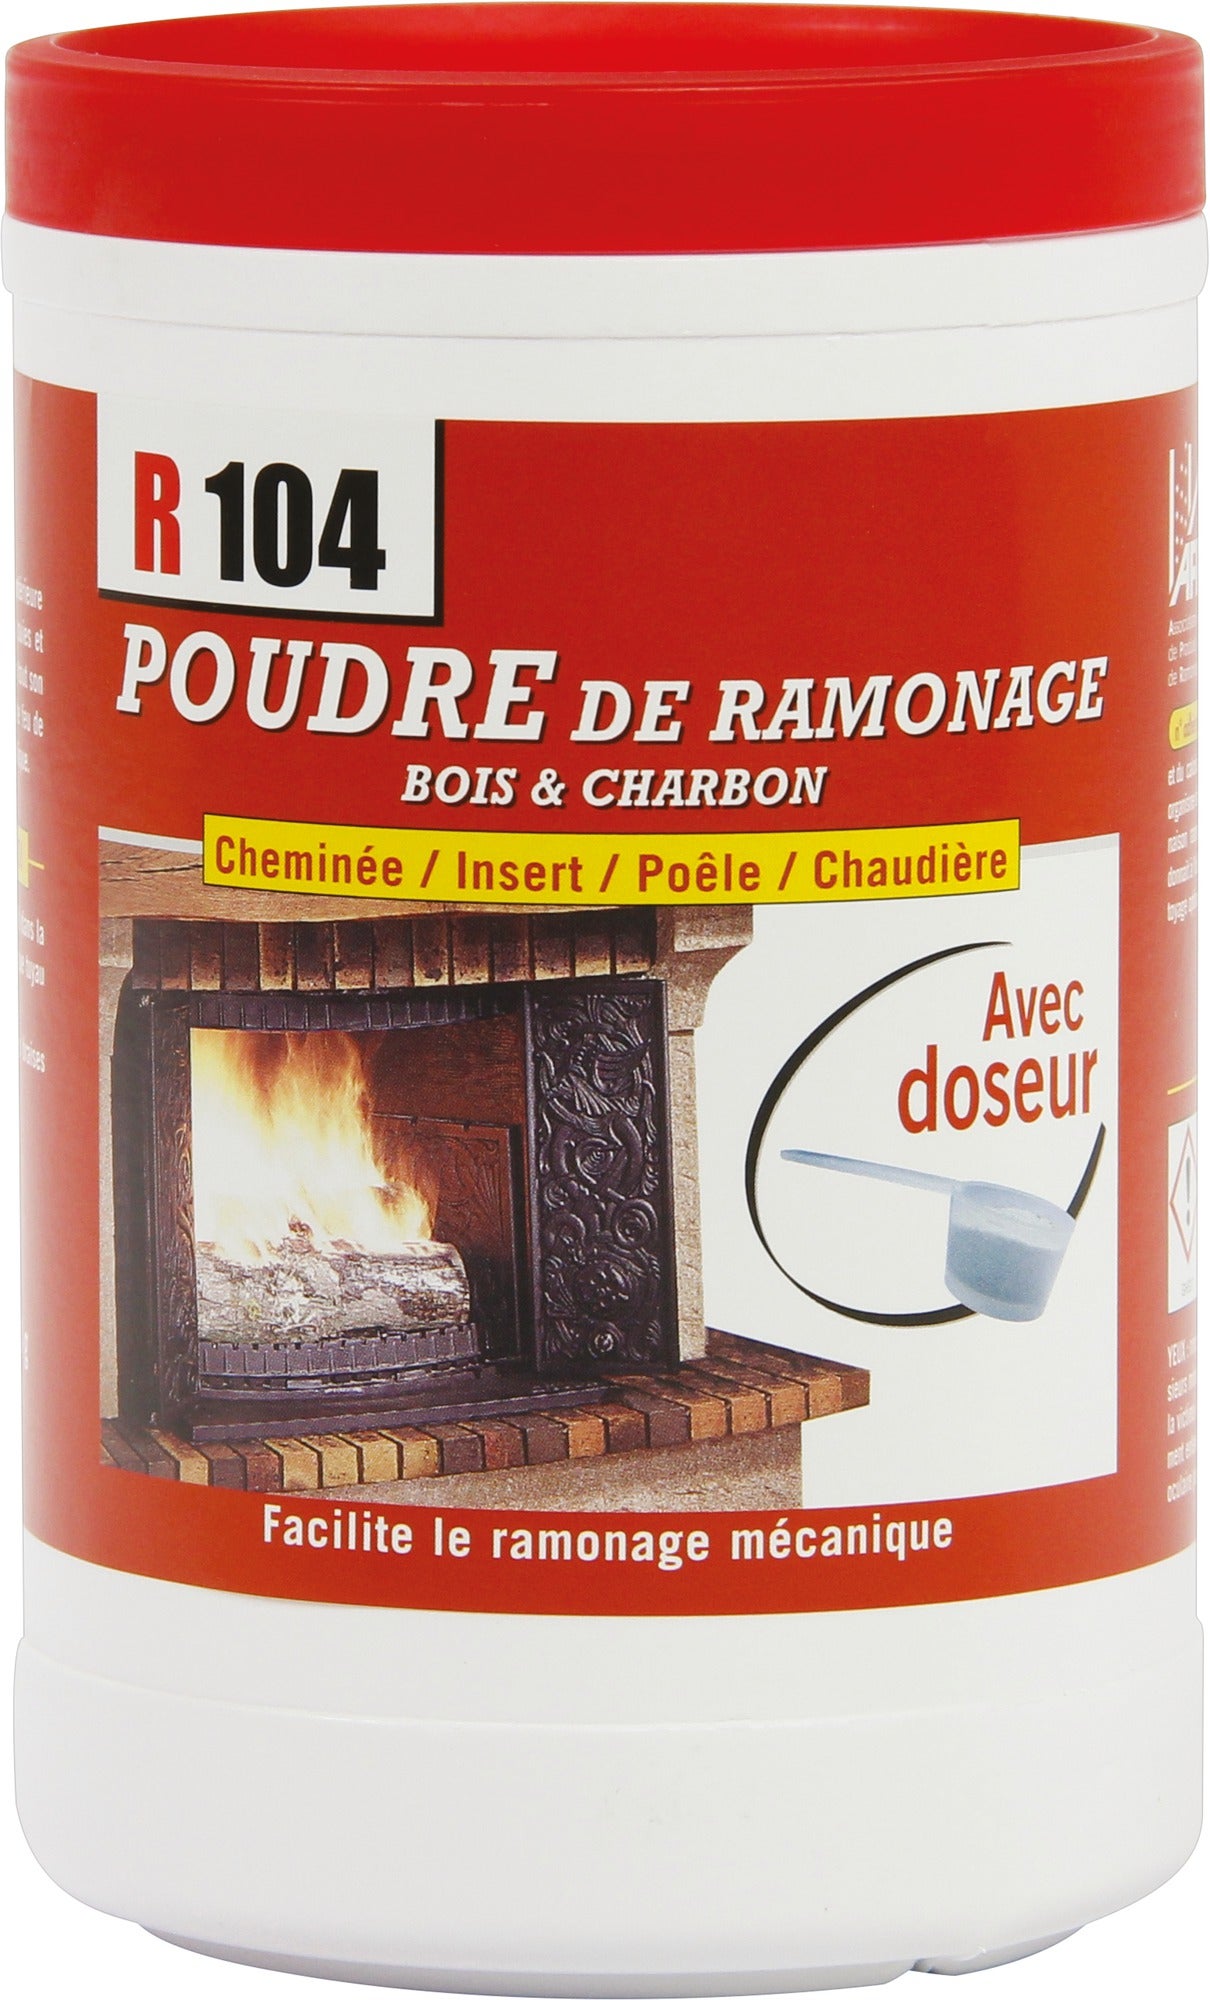 Ramoneur R104 - Poudre de ramonage - 900 g